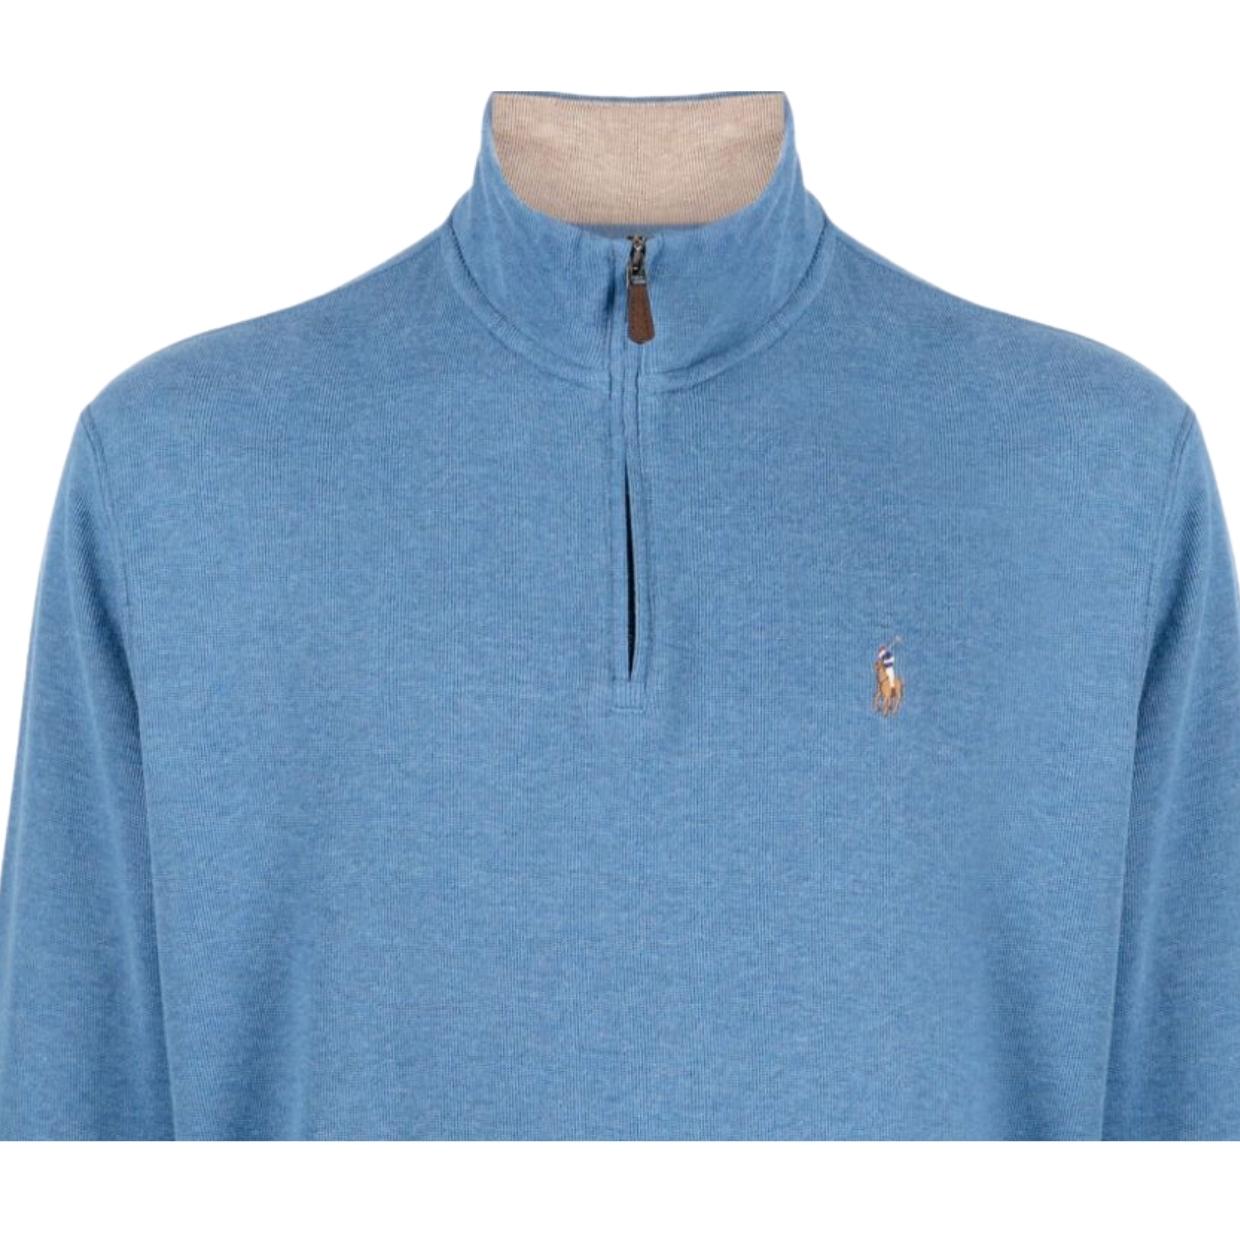 Polo Ralph Lauren Blue Quarter Zip Sweater